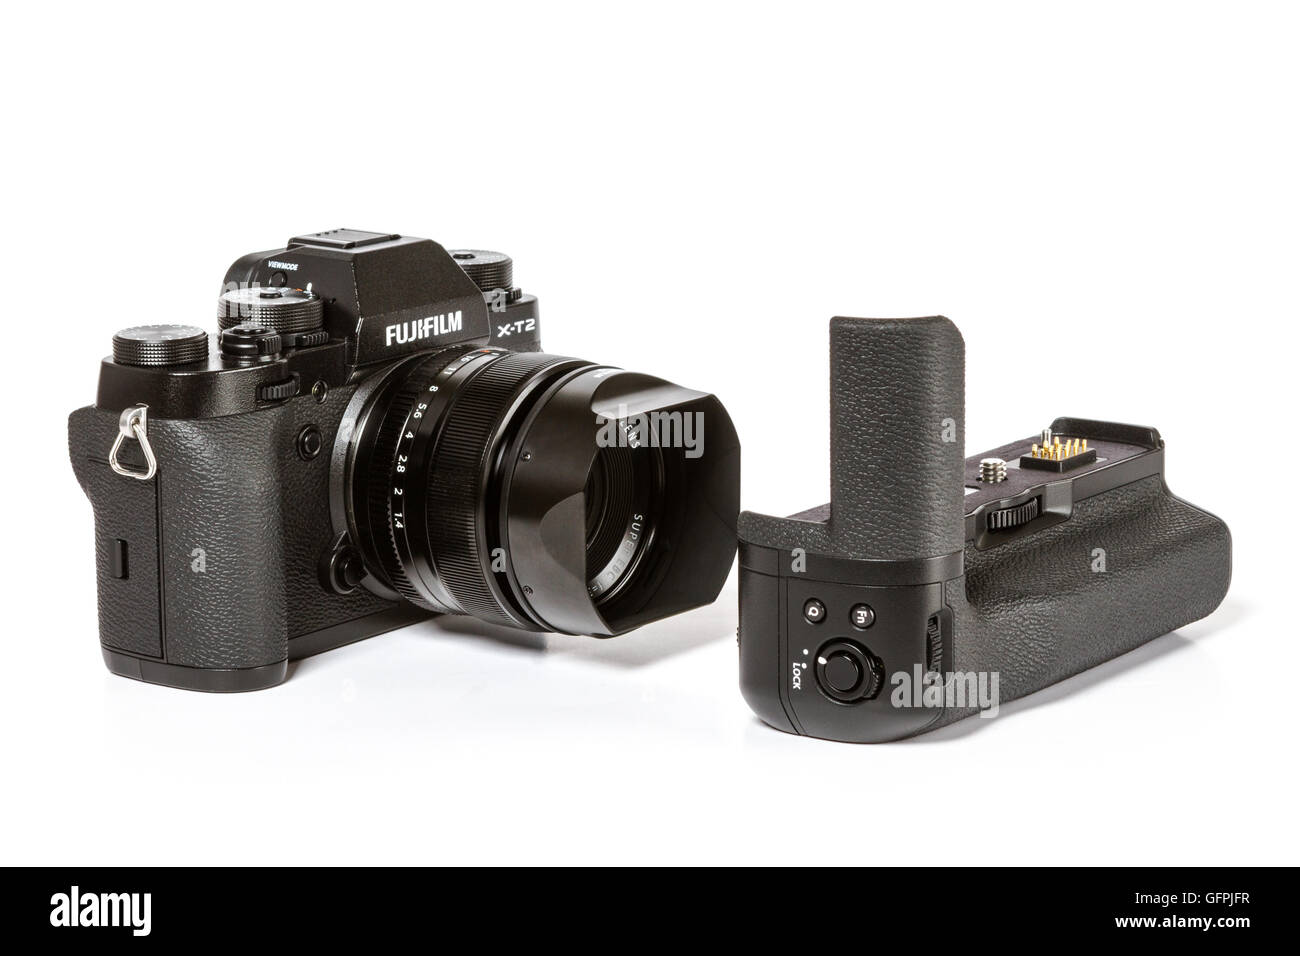 Photo de FUJIFILM X-T2, 24 mégapixels, caméra vidéo 4K mirrorless 35mm avec objectif Fujinon 1,4 par le grip batterie supplémentaire Banque D'Images